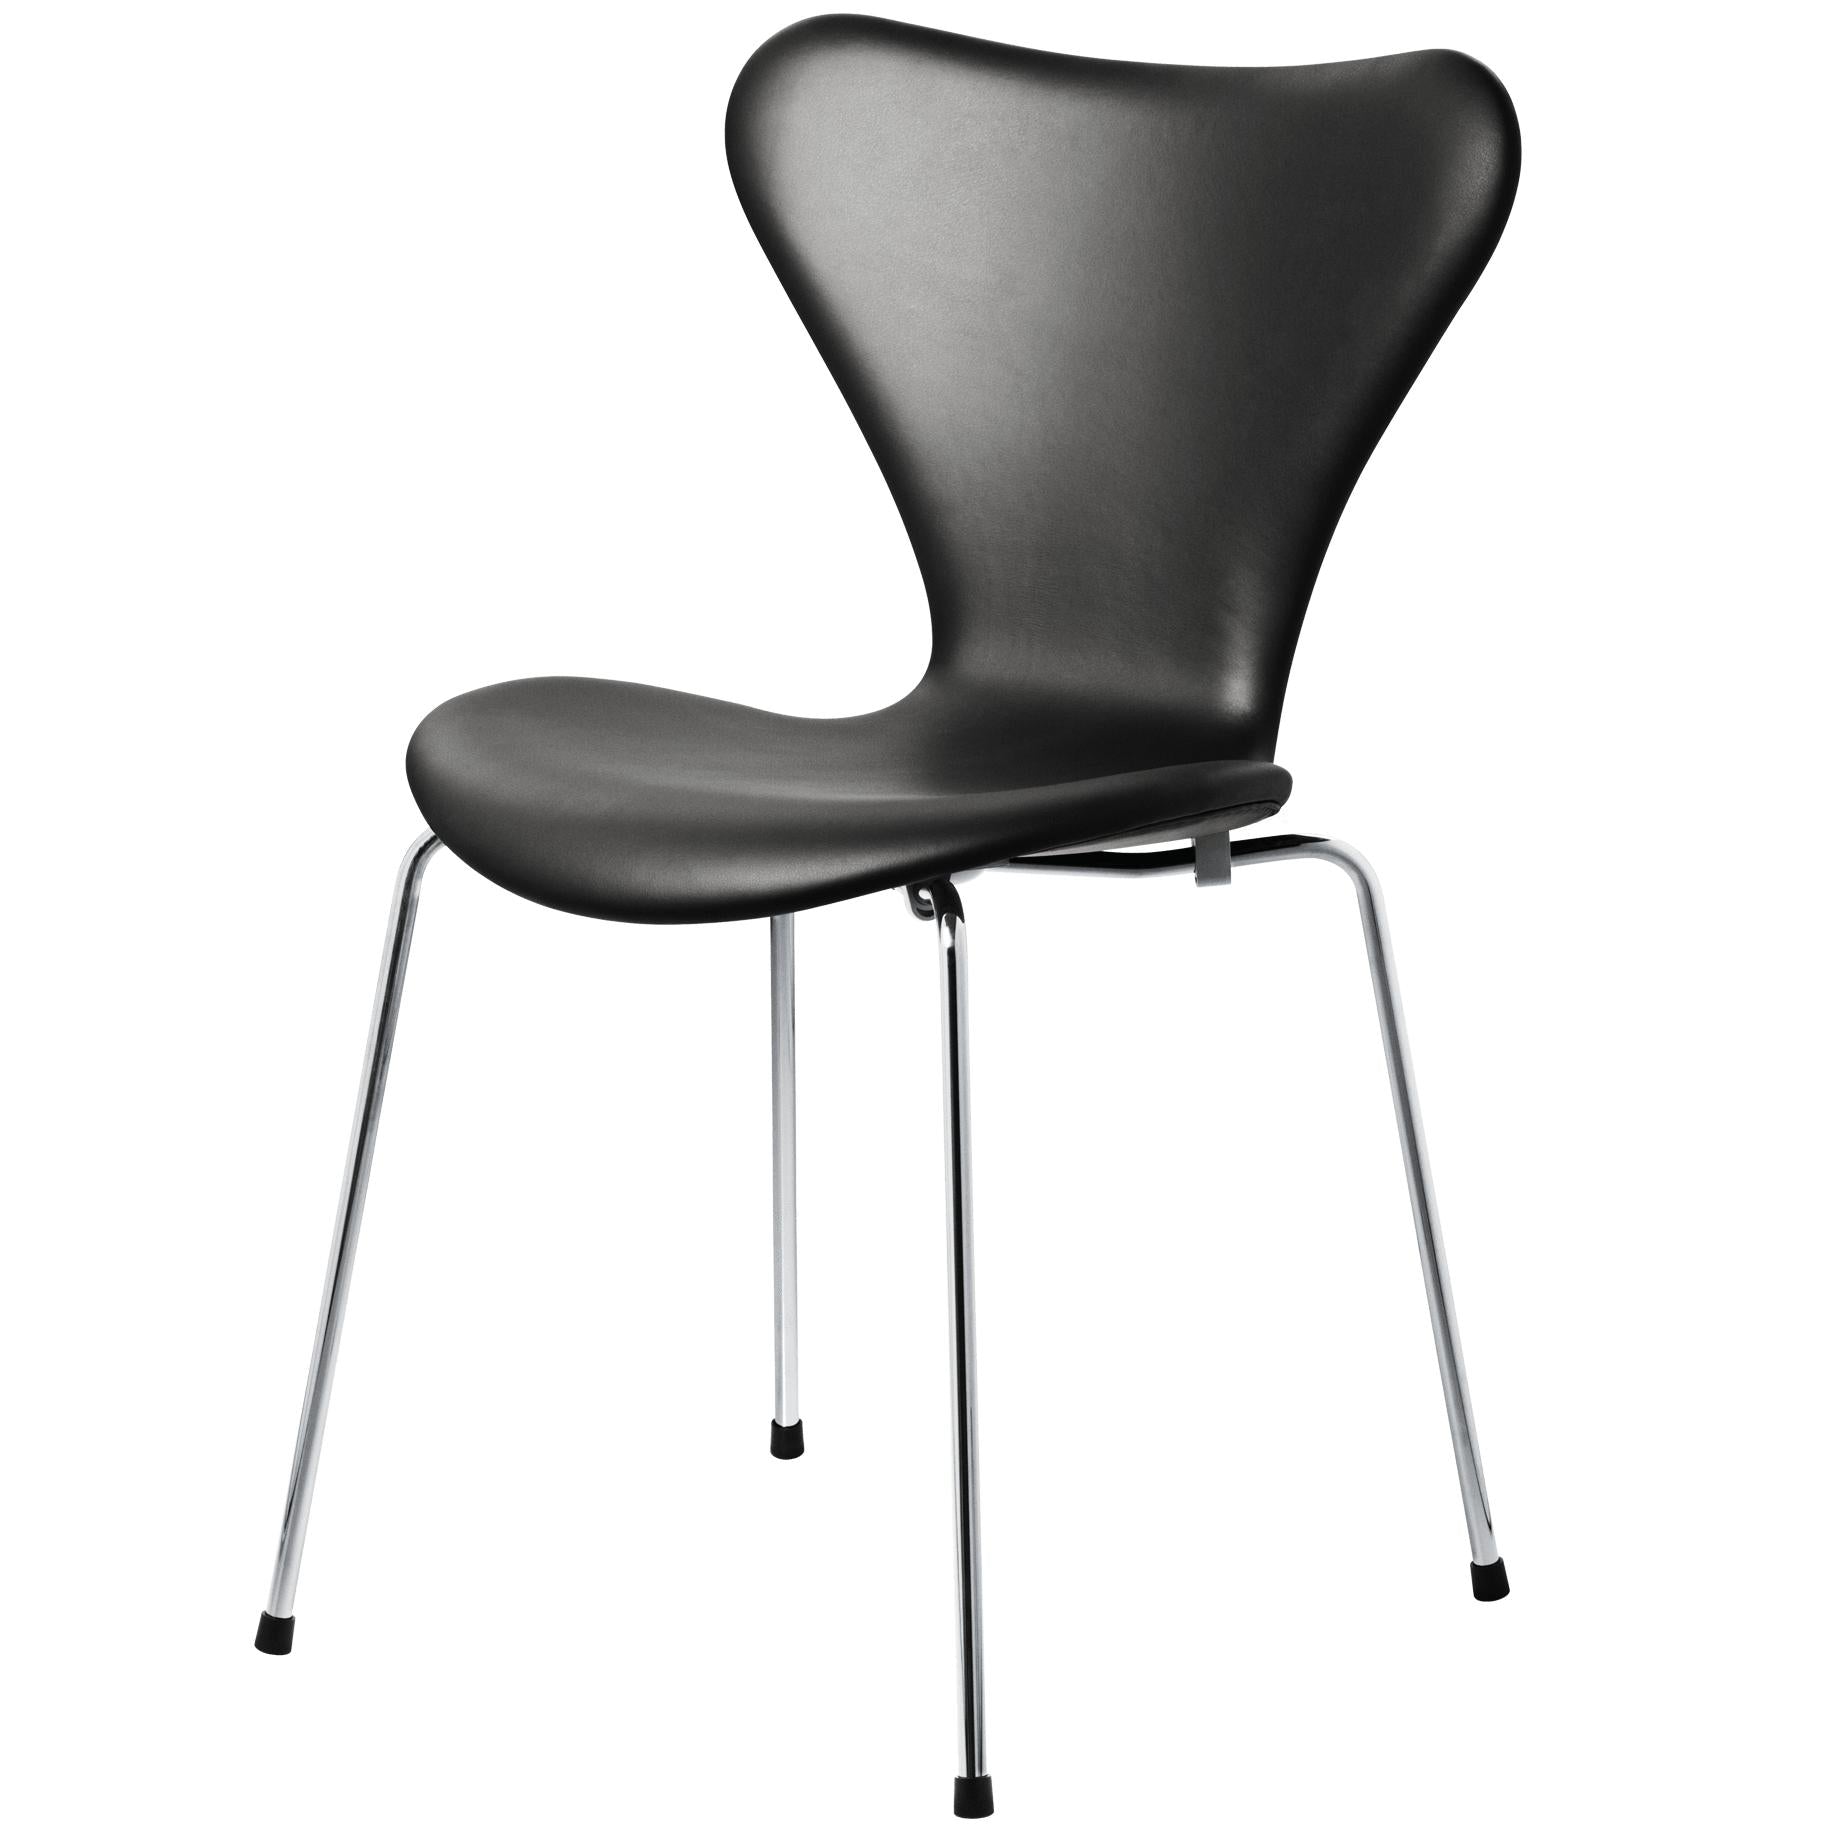 Fritz Hansen Series 7 Židle plná čalounění kůže, Essential Black